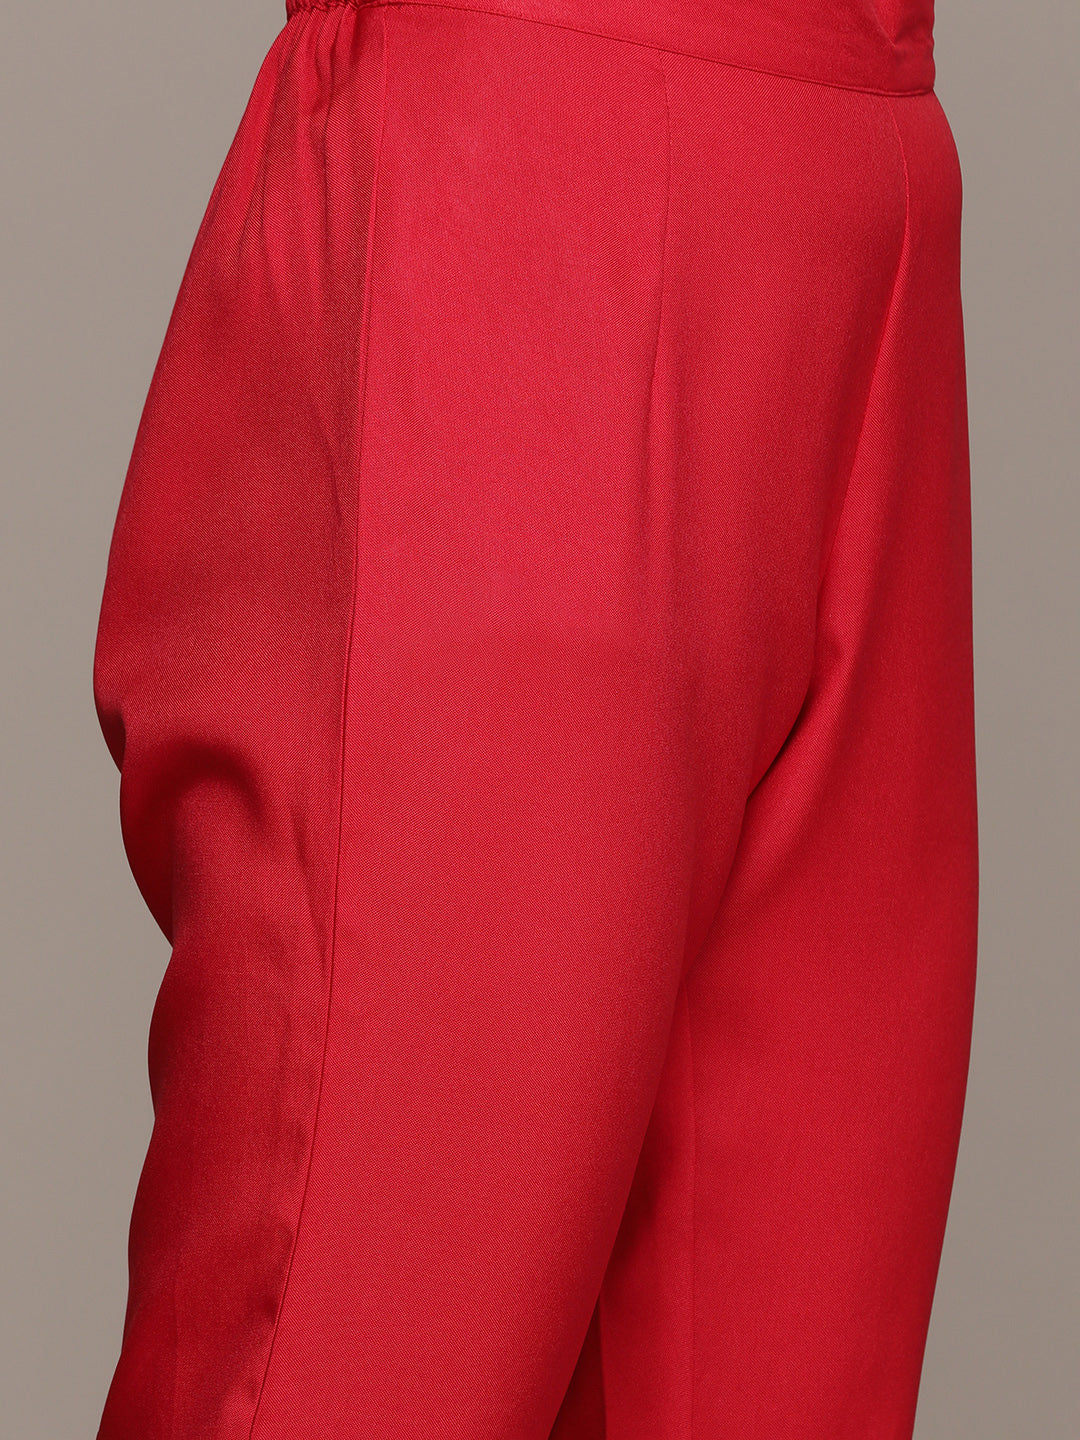 Women's Red Poly Rayon Straight Kurta, Pant And Dupatta Set - Ziyaa